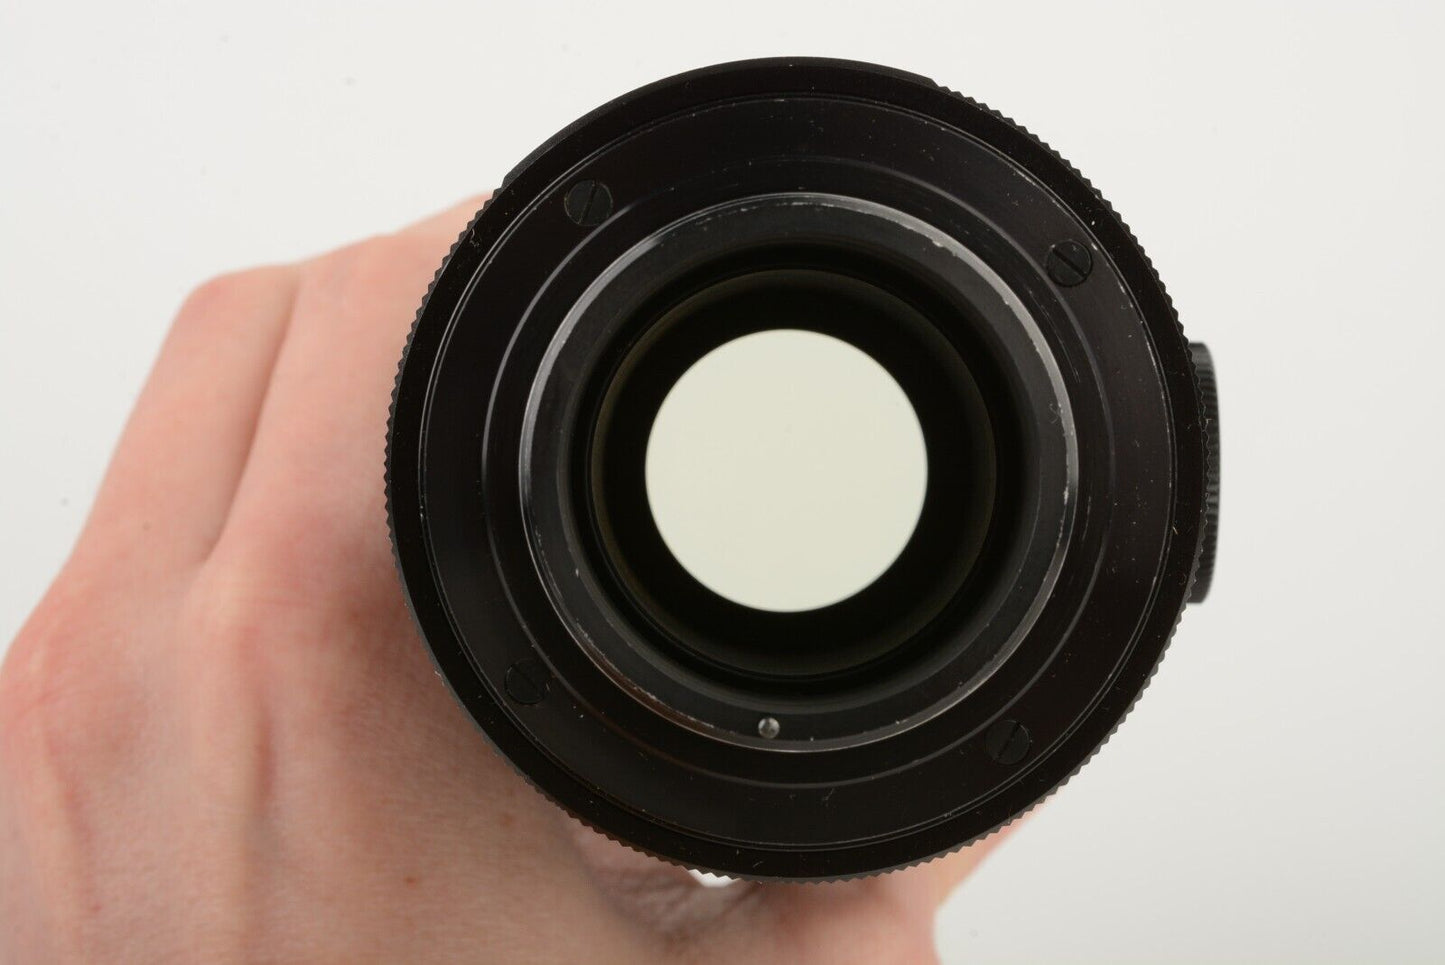 EXC++ YASHICA YASHINON ZOOM 75-230mm f4.5 TELEPHOTO M42 MOUNT, UV+CAPS, NICE!